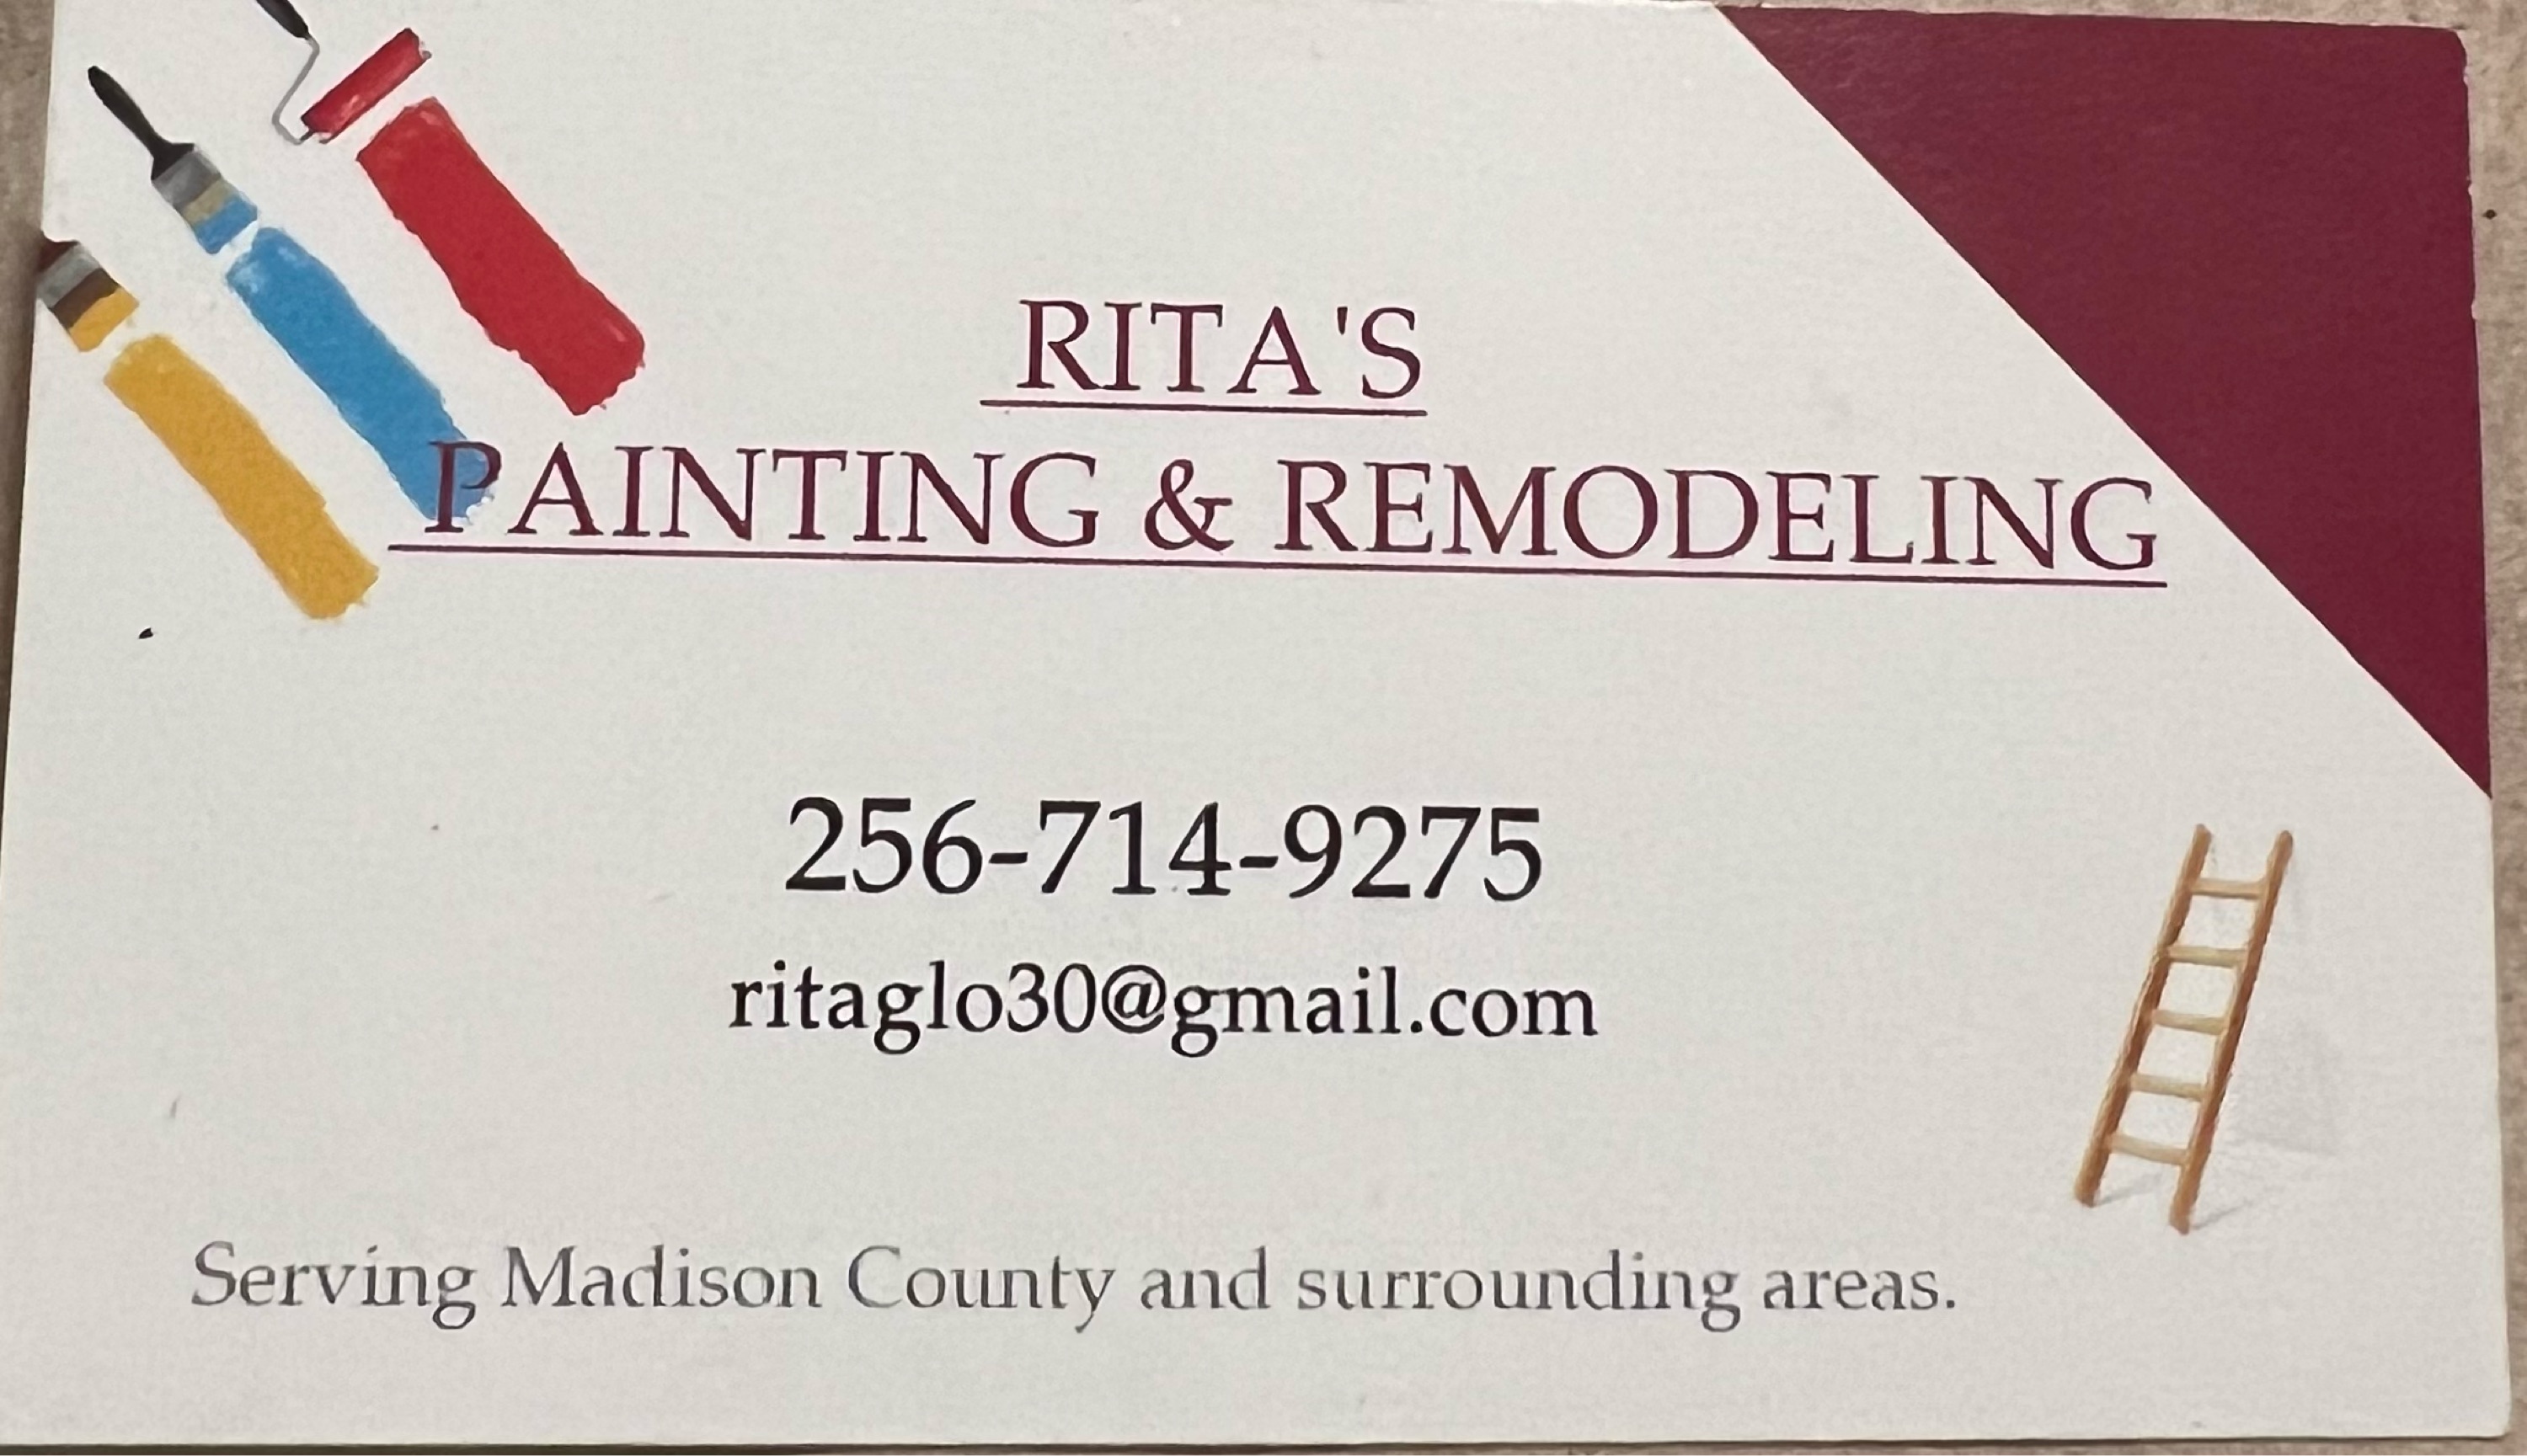 Rita's Paint & Remodel Logo